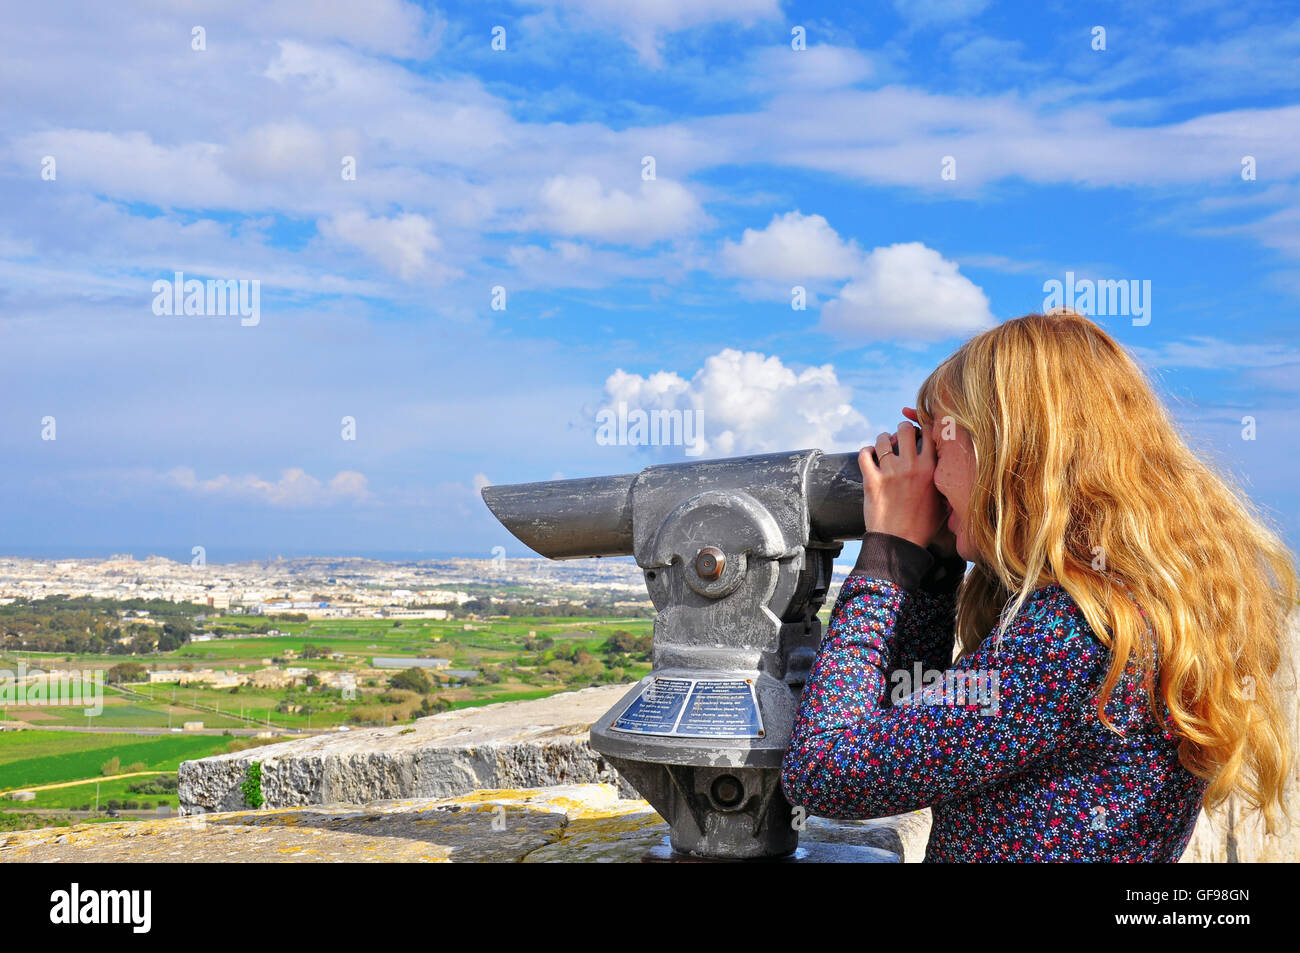 Blondy Langhaar-Mädchen auf der Suche im Teleskop. Maltesischen Inseln Stockfoto